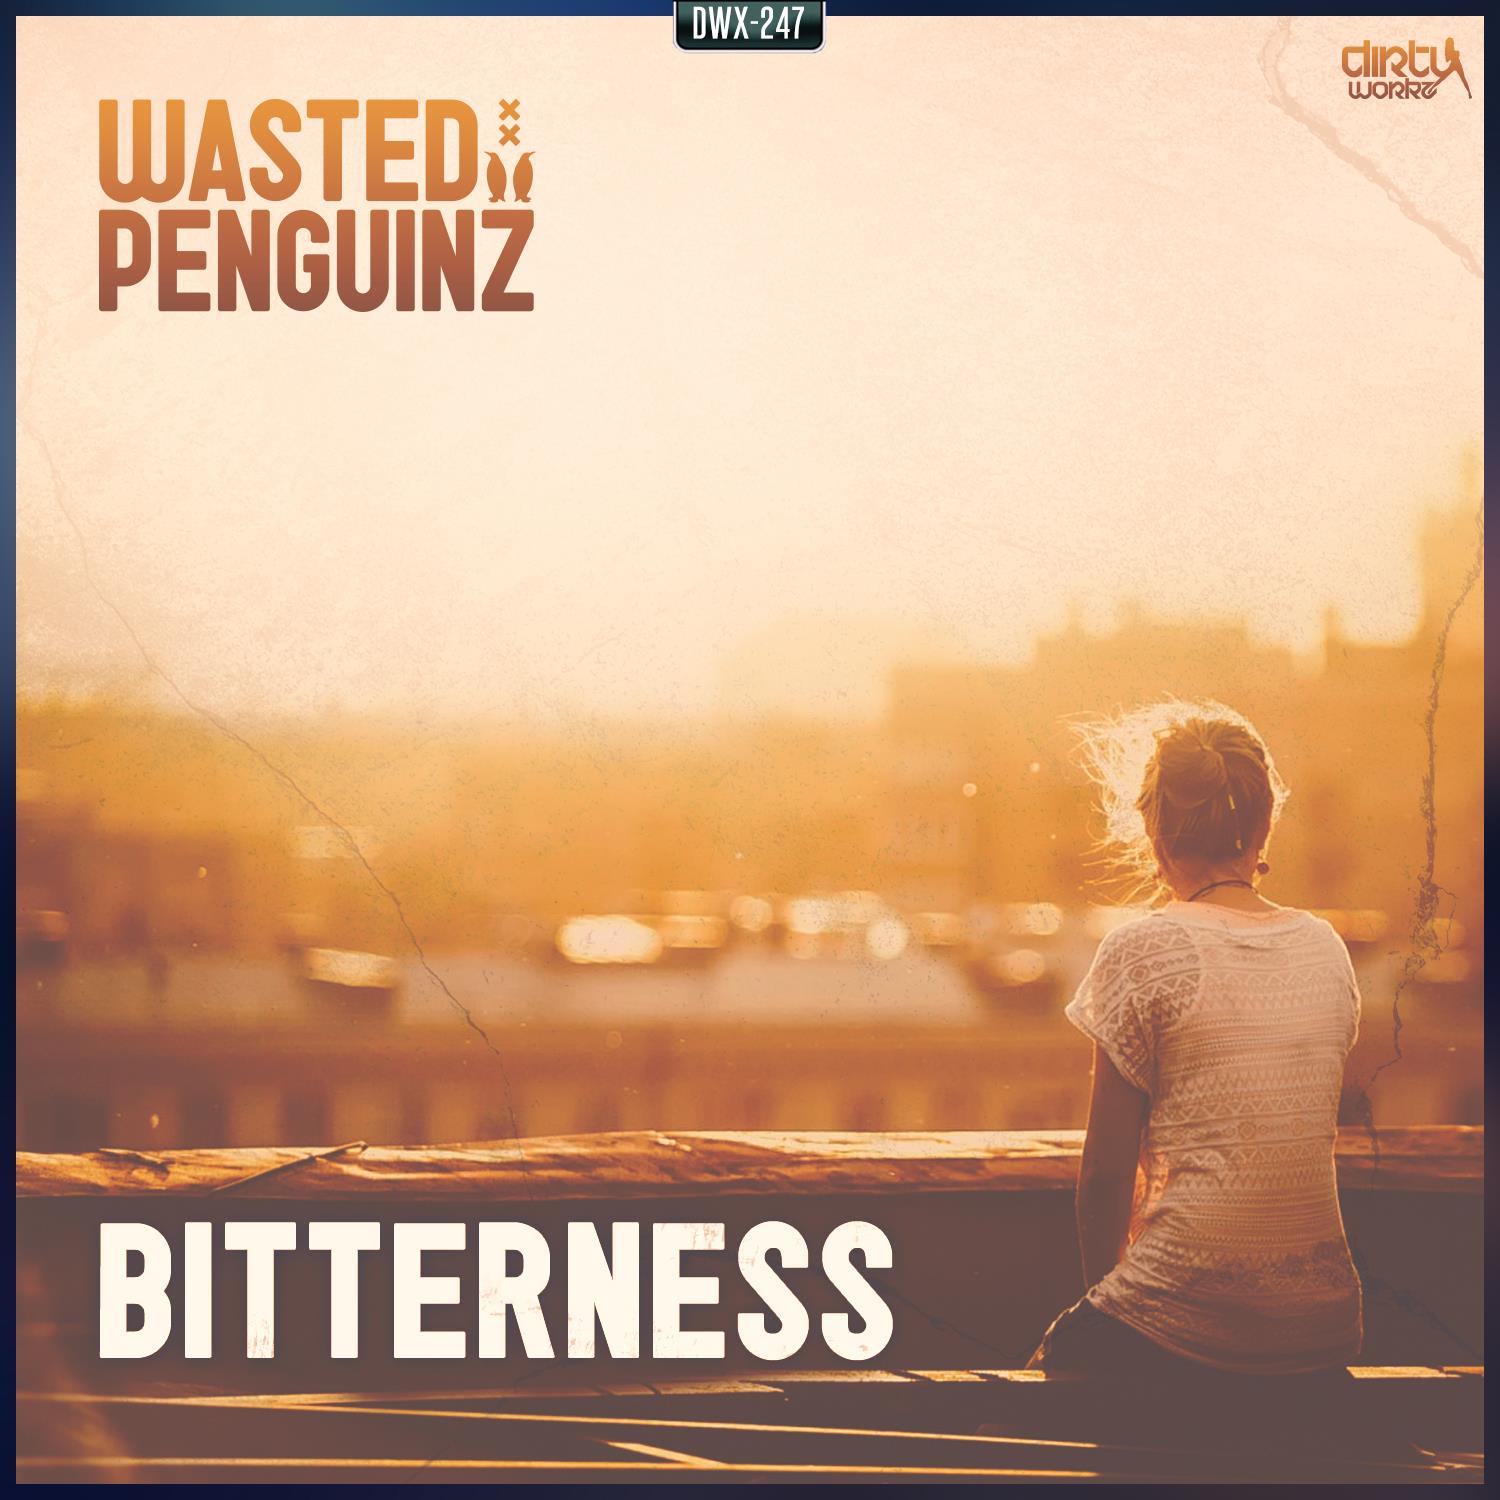 Wasted Penguinz - Bitterness - Nieuweplaat1500 x 1500